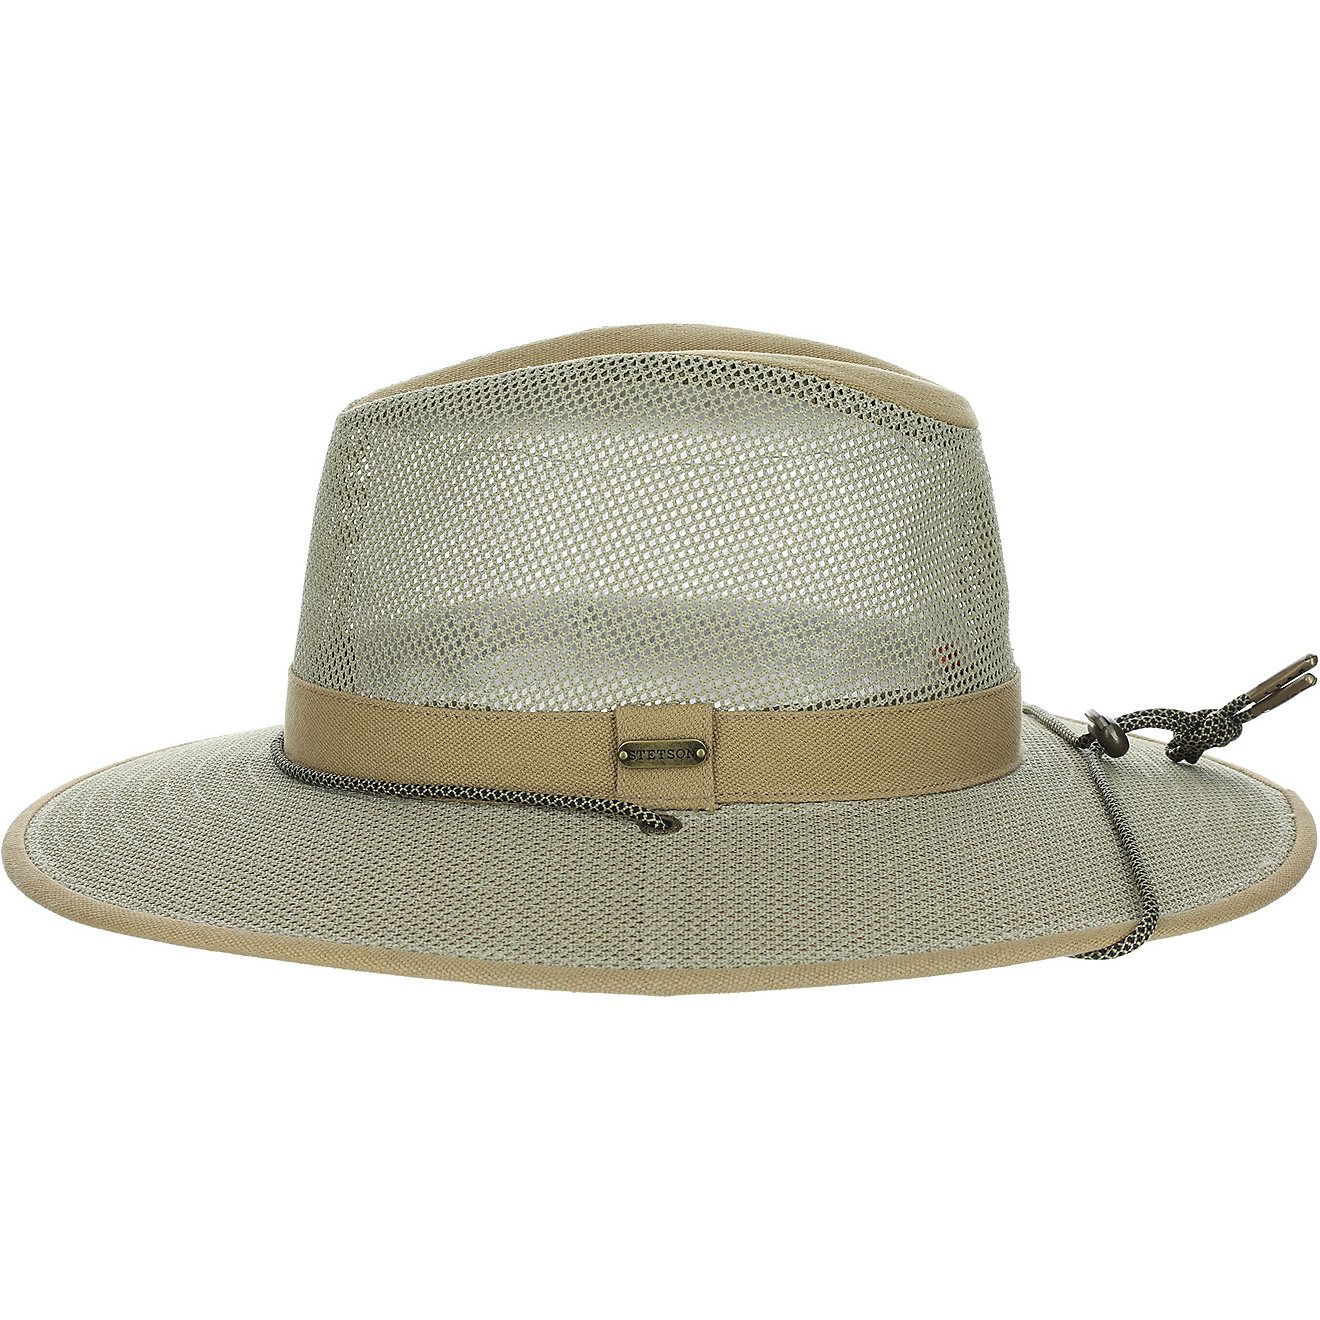 aussie safari hat